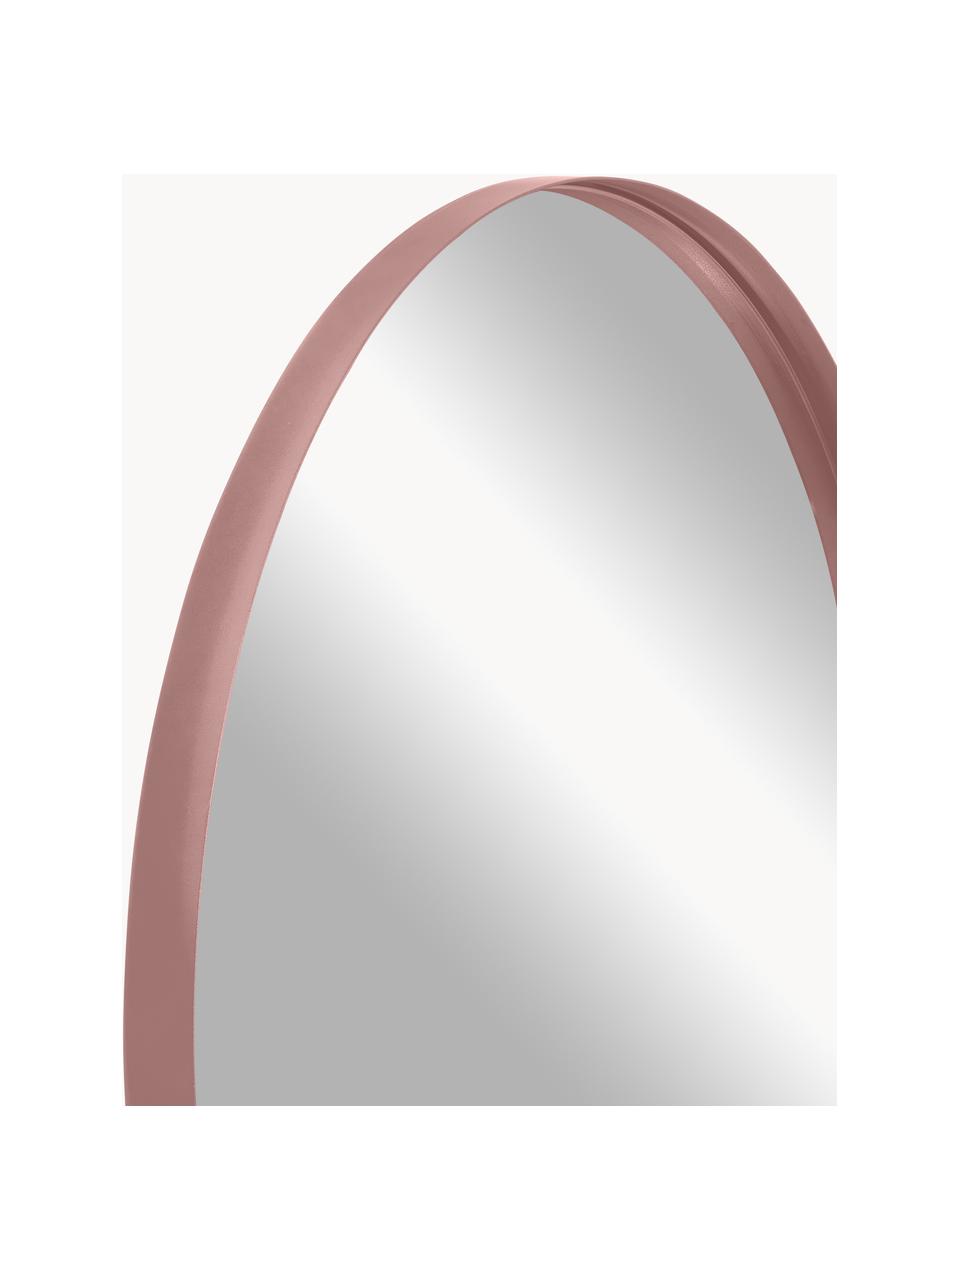 Runder Wandspiegel Ivy, Rahmen: Metall, pulverbeschichtet, Spiegelfläche: Spiegelglas, Rückseite: Mitteldichte Holzfaserpla, Altrosa, Ø 72 x T 3 cm